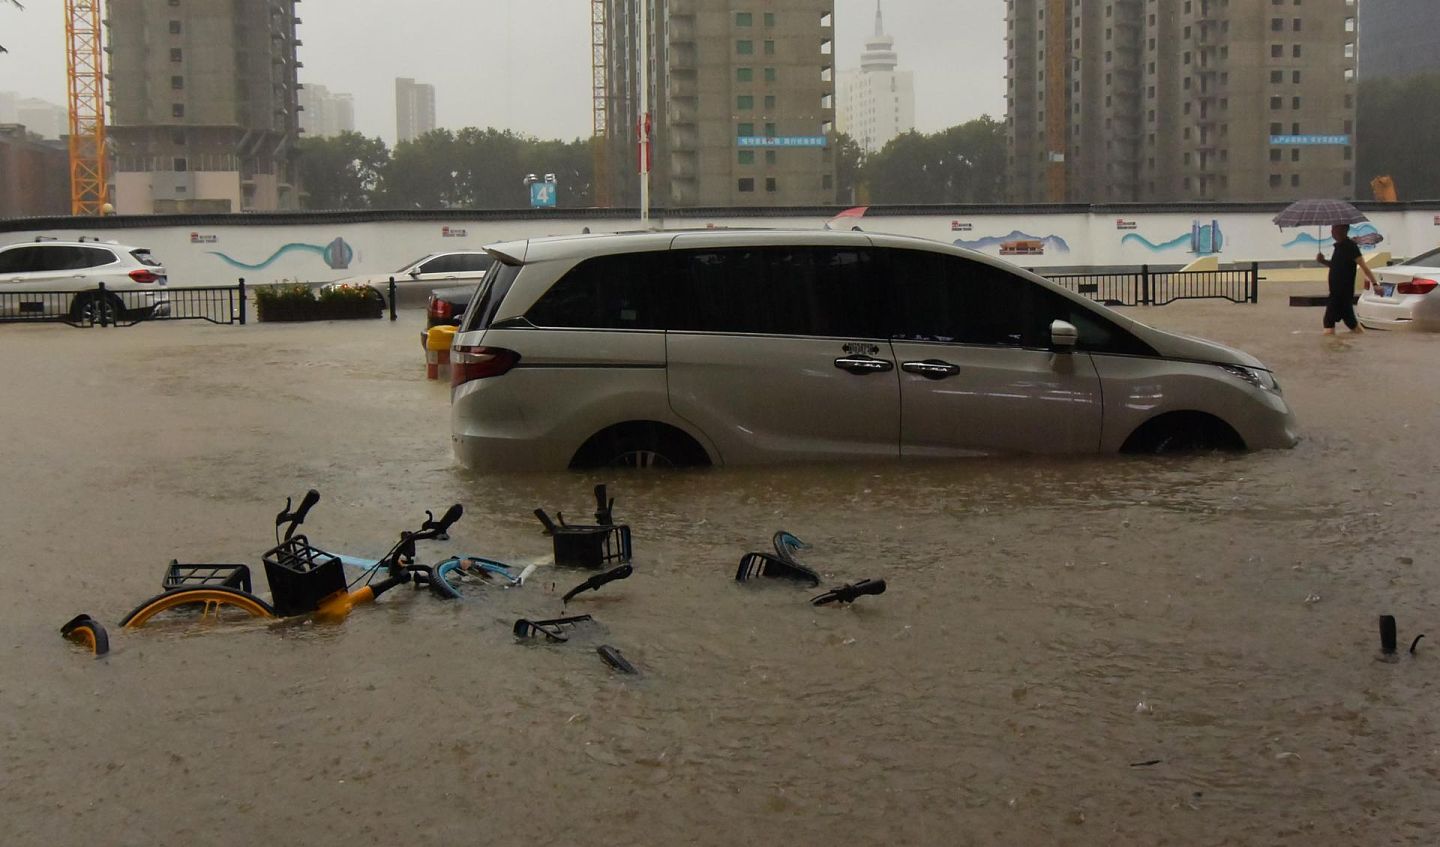 郑州遭遇历史极值暴雨      7月20日，车辆在郑州市街头被淹。      7月20日，记者从河南省郑州市防汛抗旱指挥部获悉，郑州市受强降雨影响，单日降雨量突破历史极值（建站以来），单小时降雨量超过日历史极值。降雨造成郑州市区严重内涝，市内交通中断，多处小区停水停电。      新华社记者 朱祥 摄